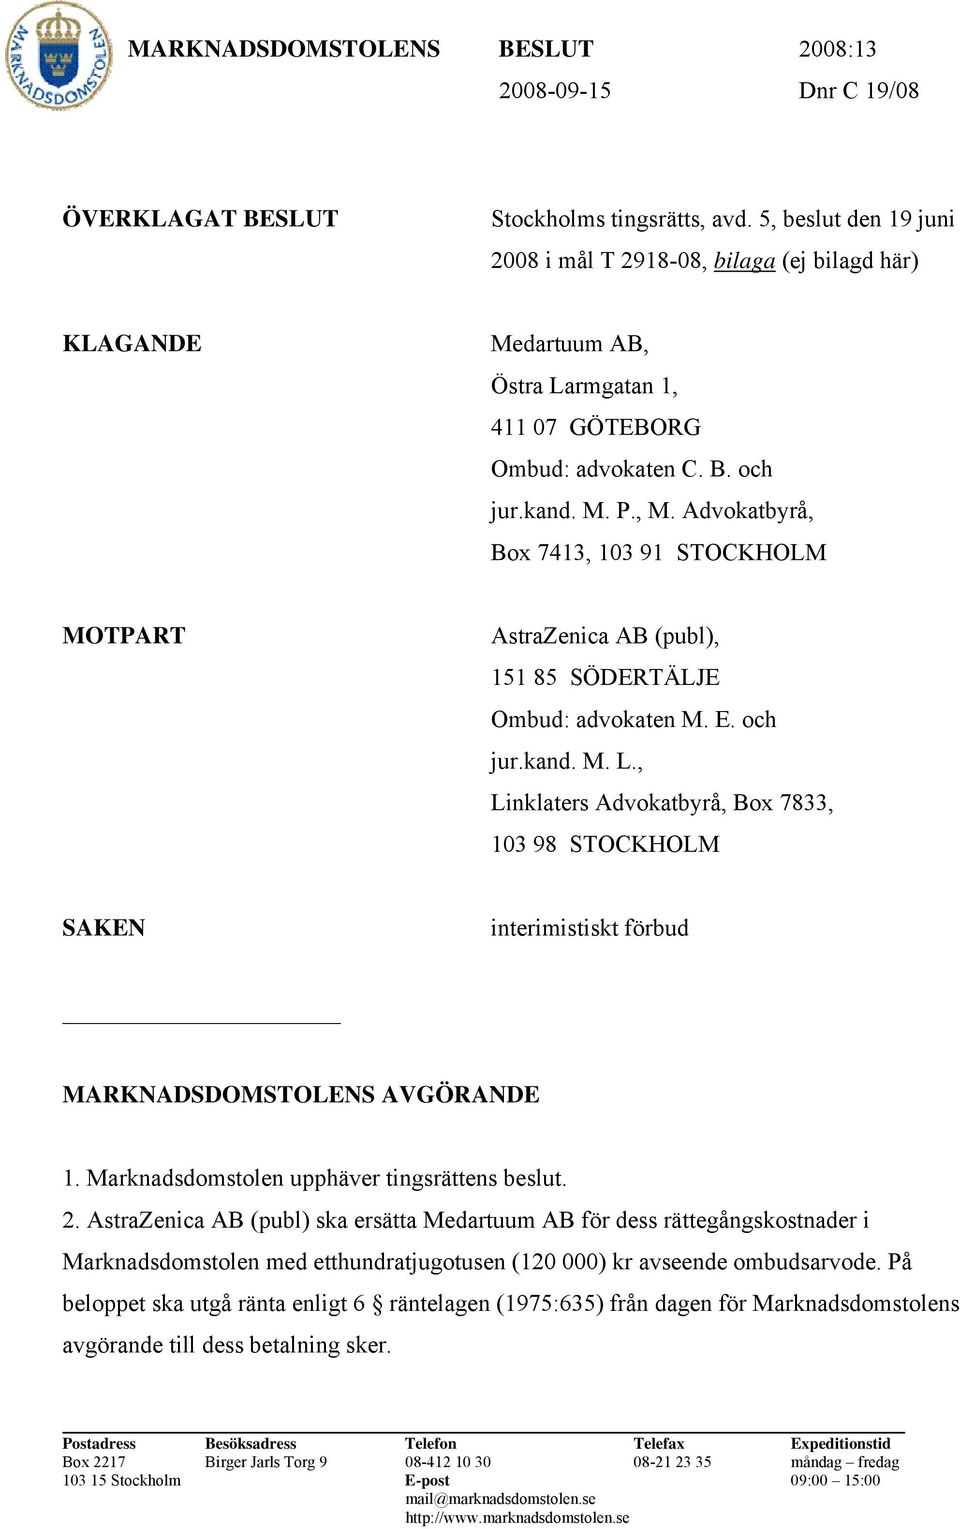 Advokatbyrå, Box 7413, 103 91 STOCKHOLM MOTPART AstraZenica AB (publ), 151 85 SÖDERTÄLJE Ombud: advokaten M. E. och jur.kand. M. L.